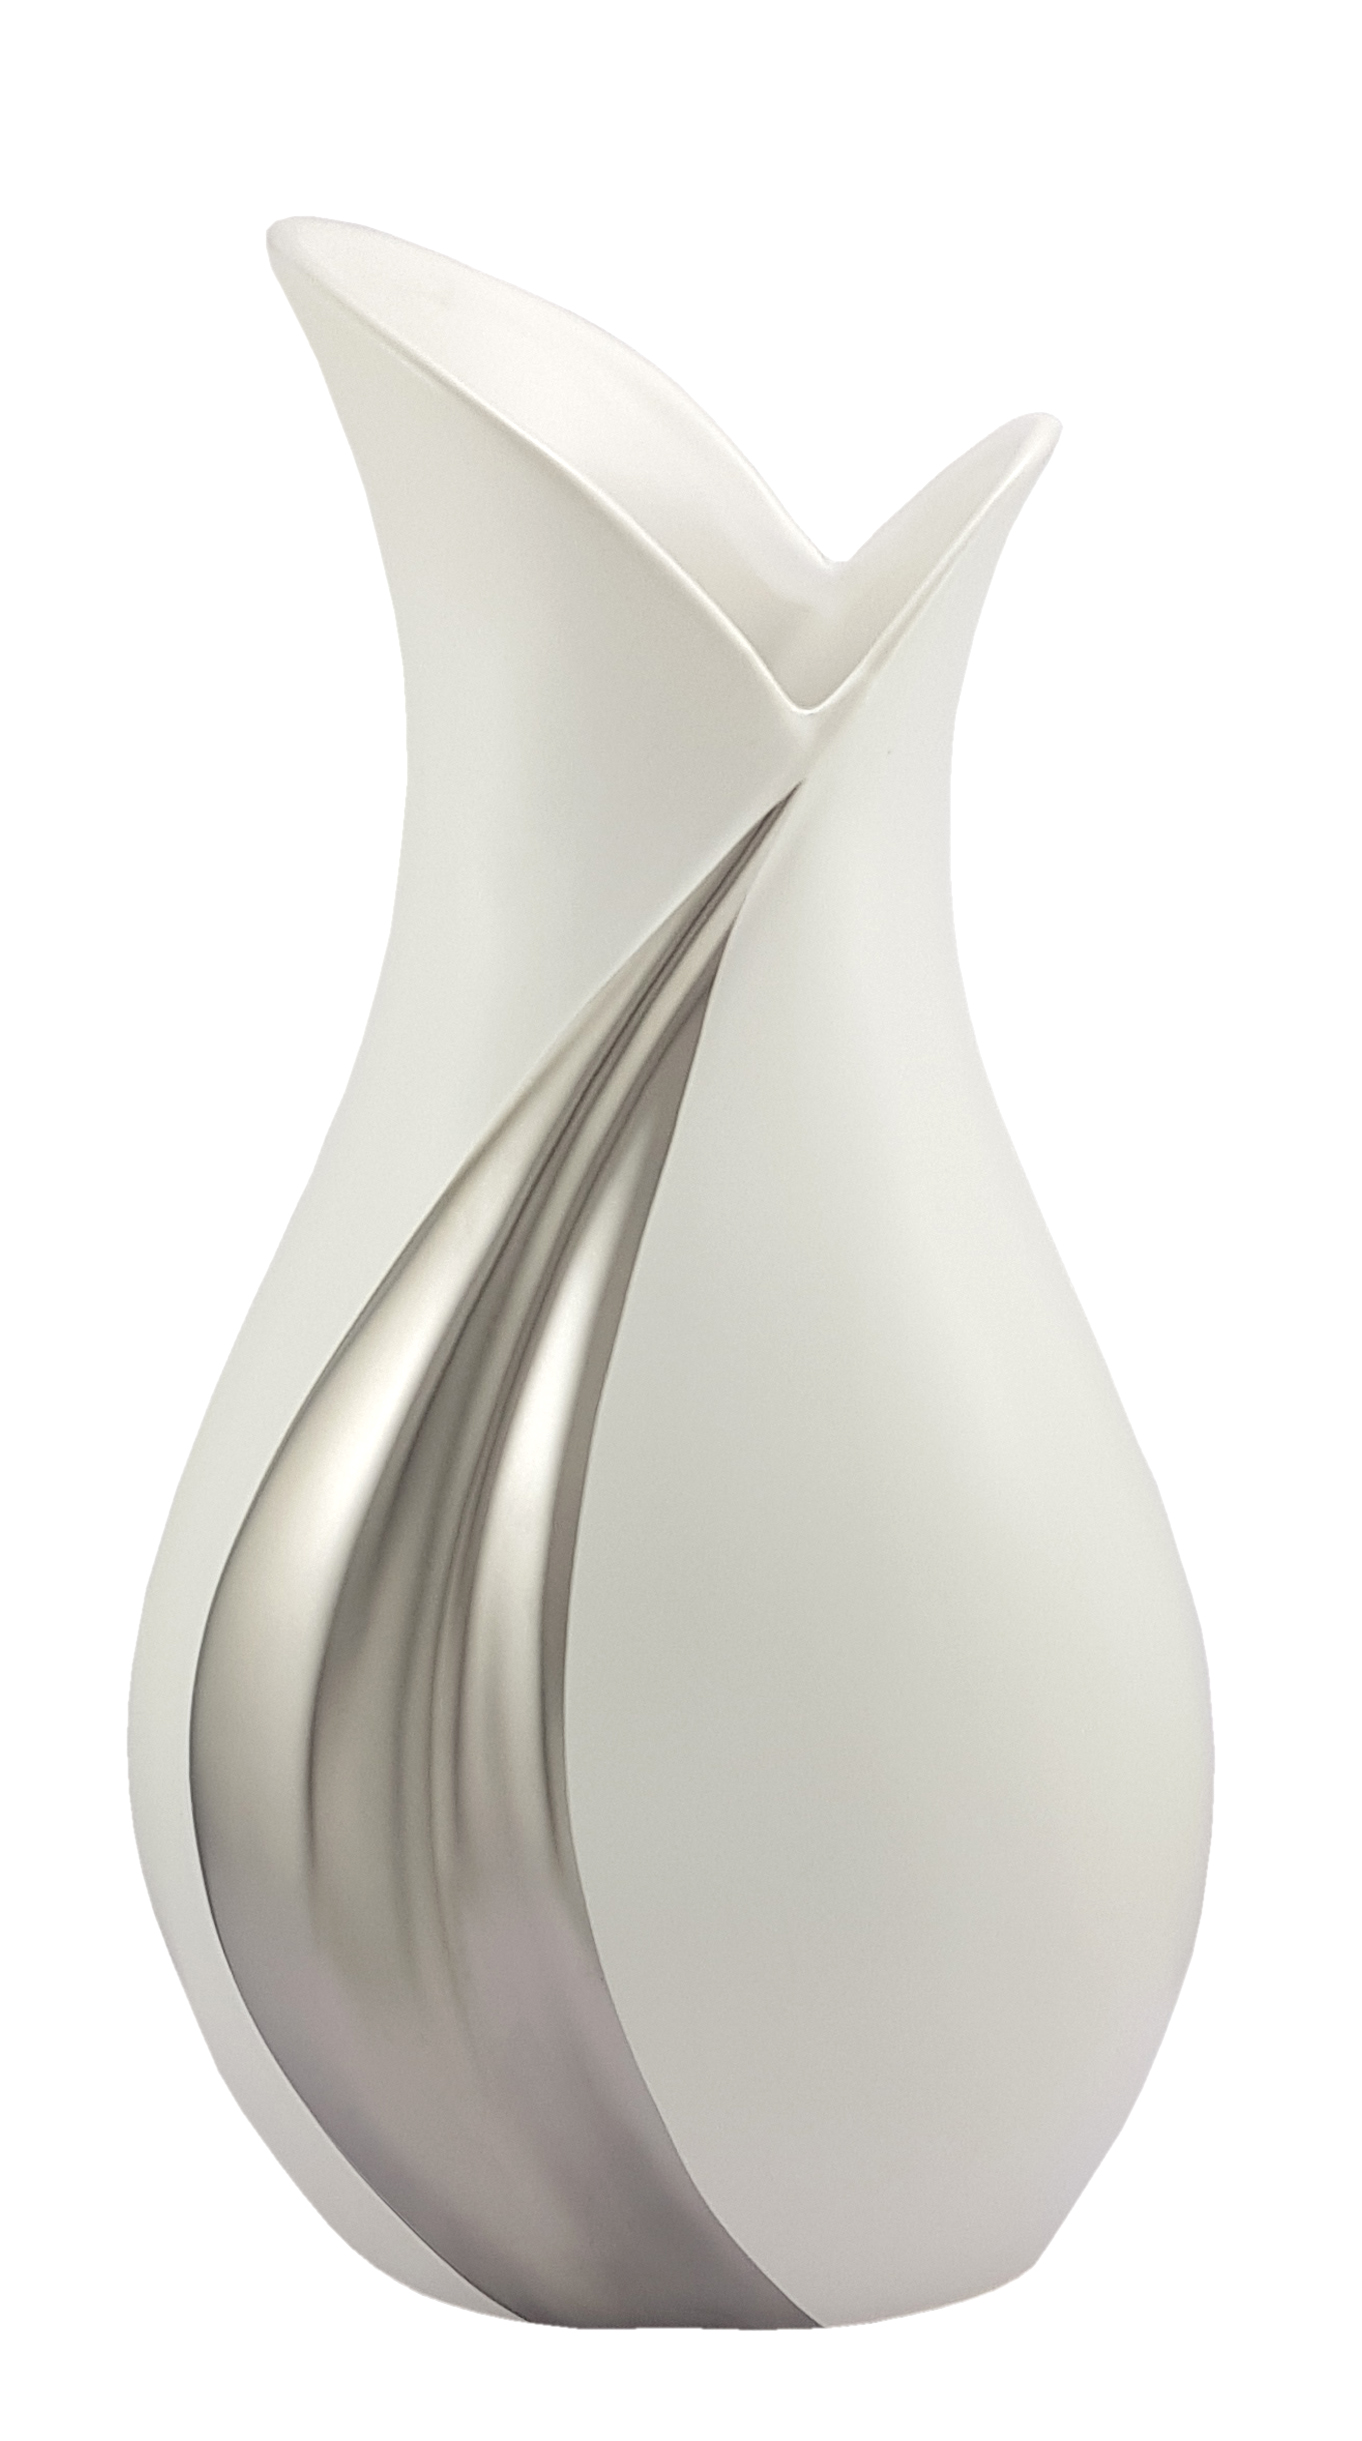 Vase design en céramique. 26 cm. Réf. 345